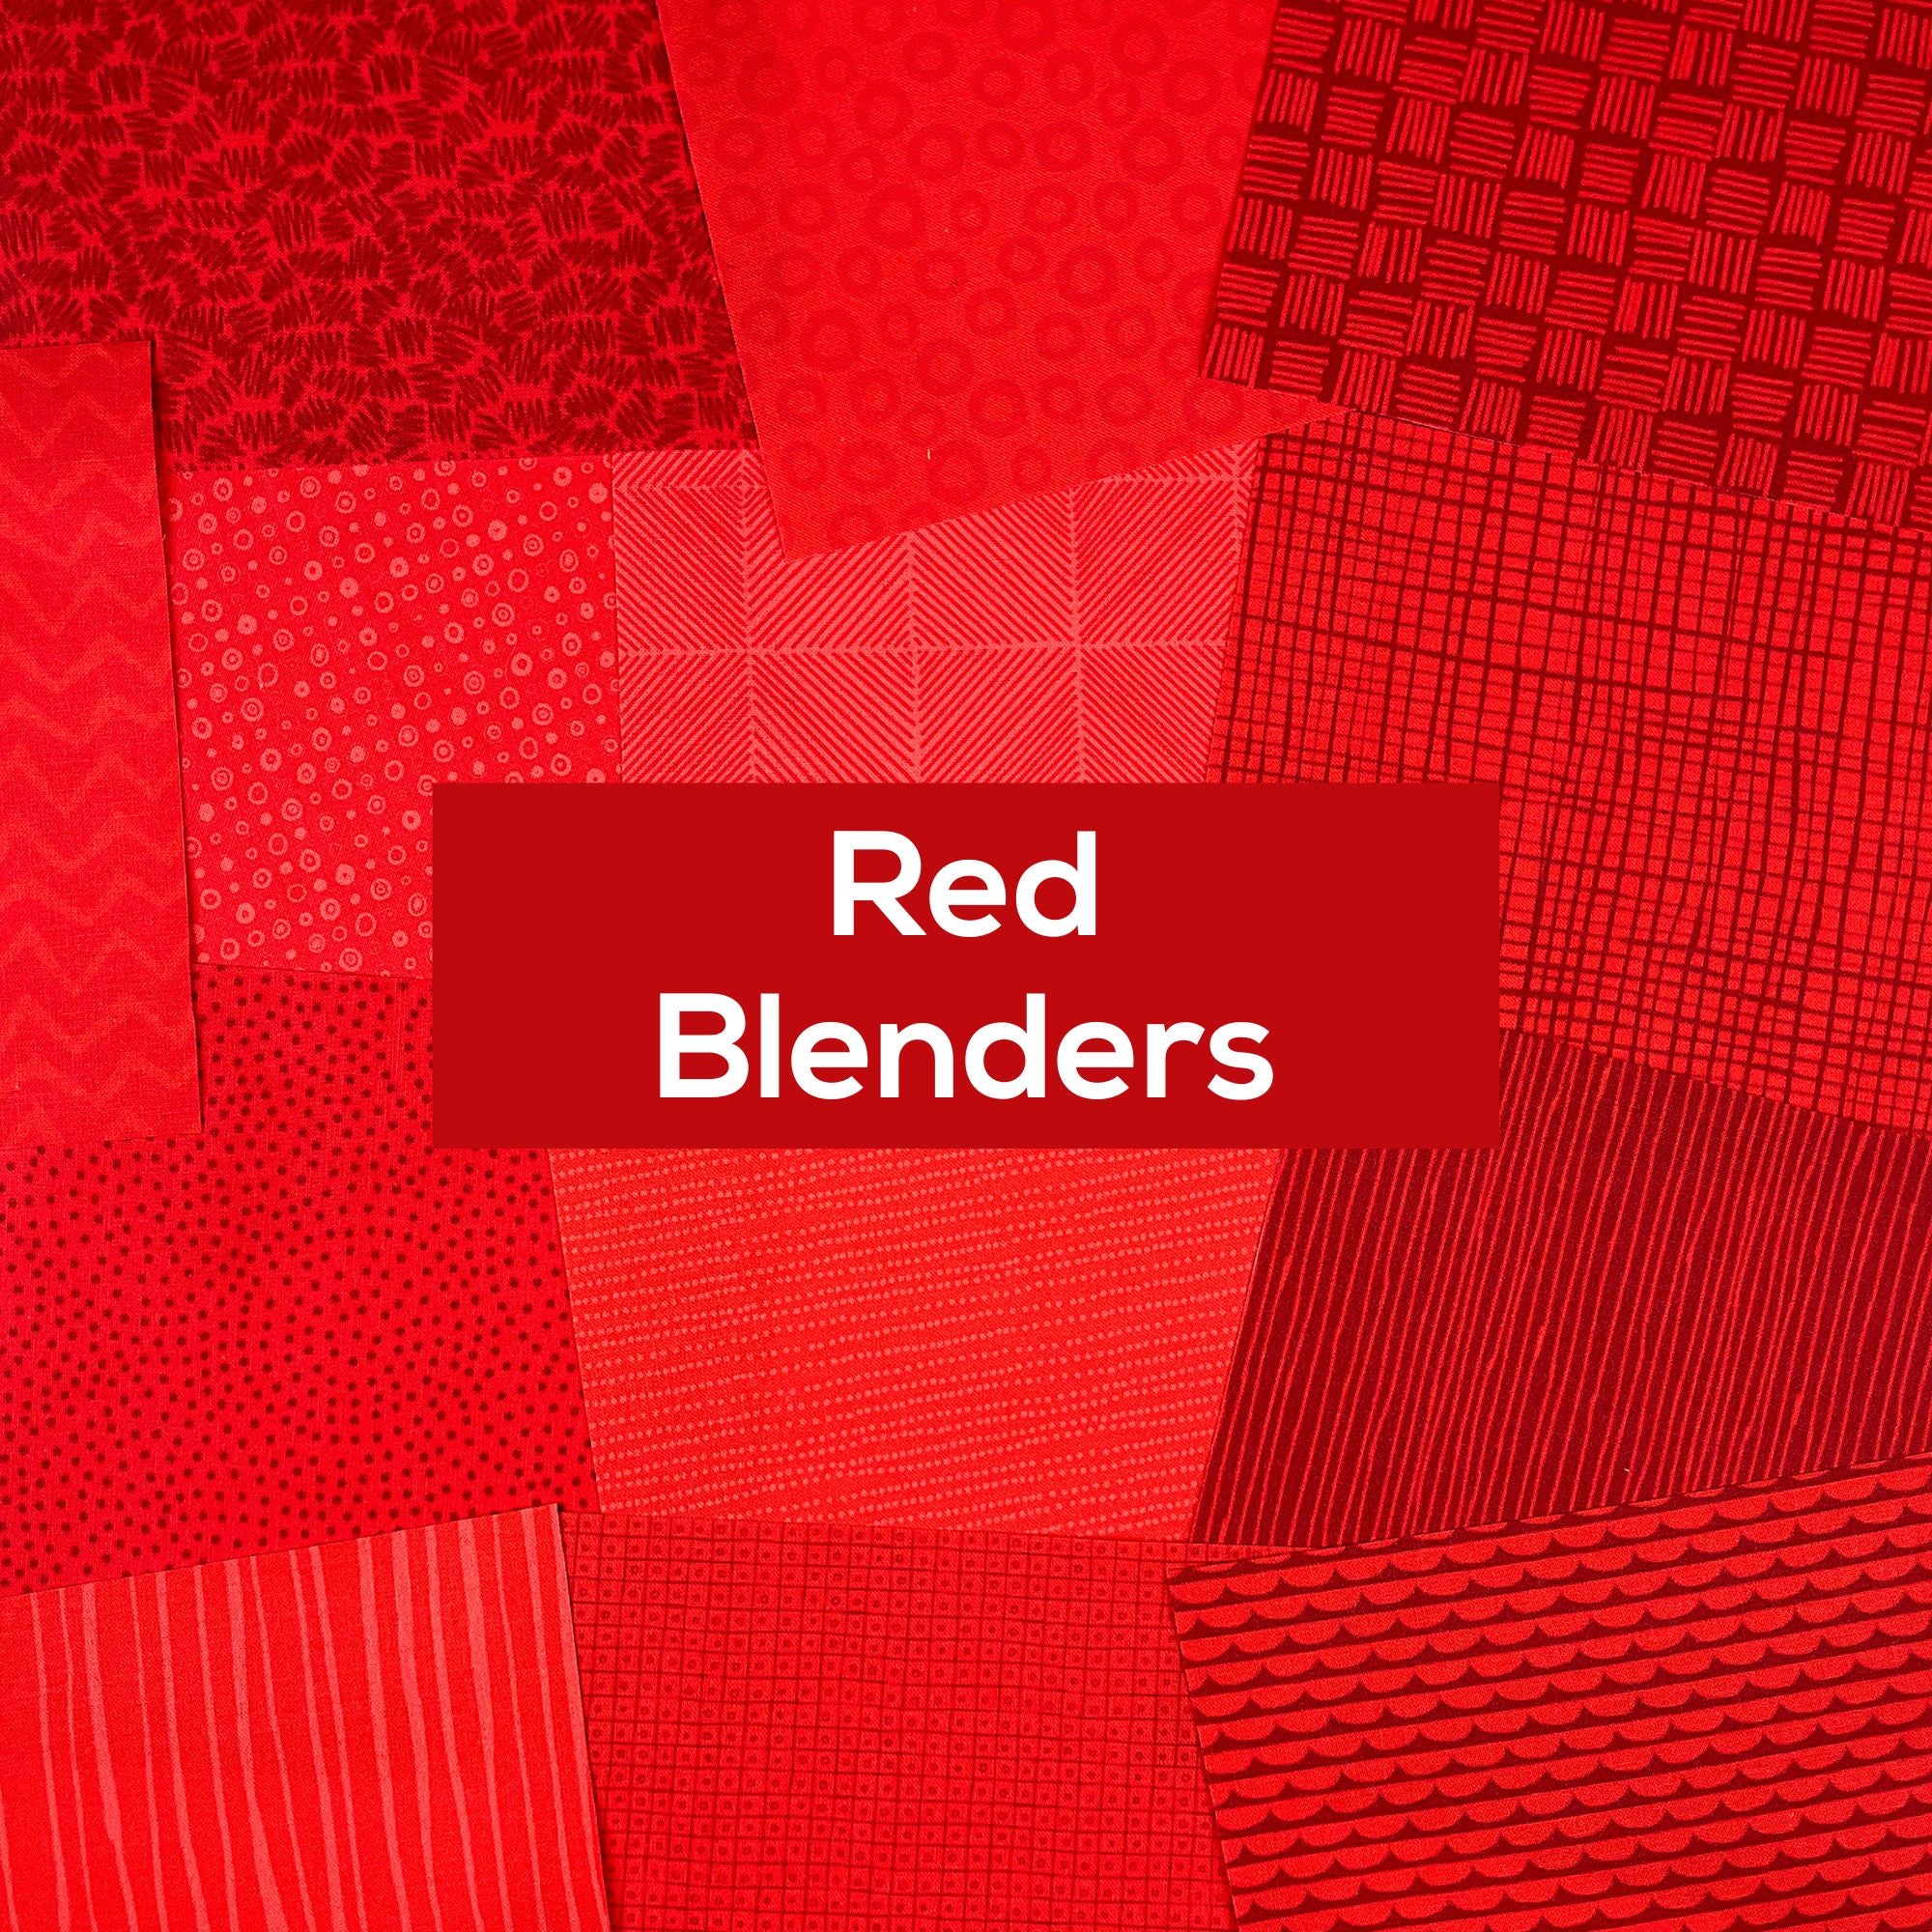 Red Blenders